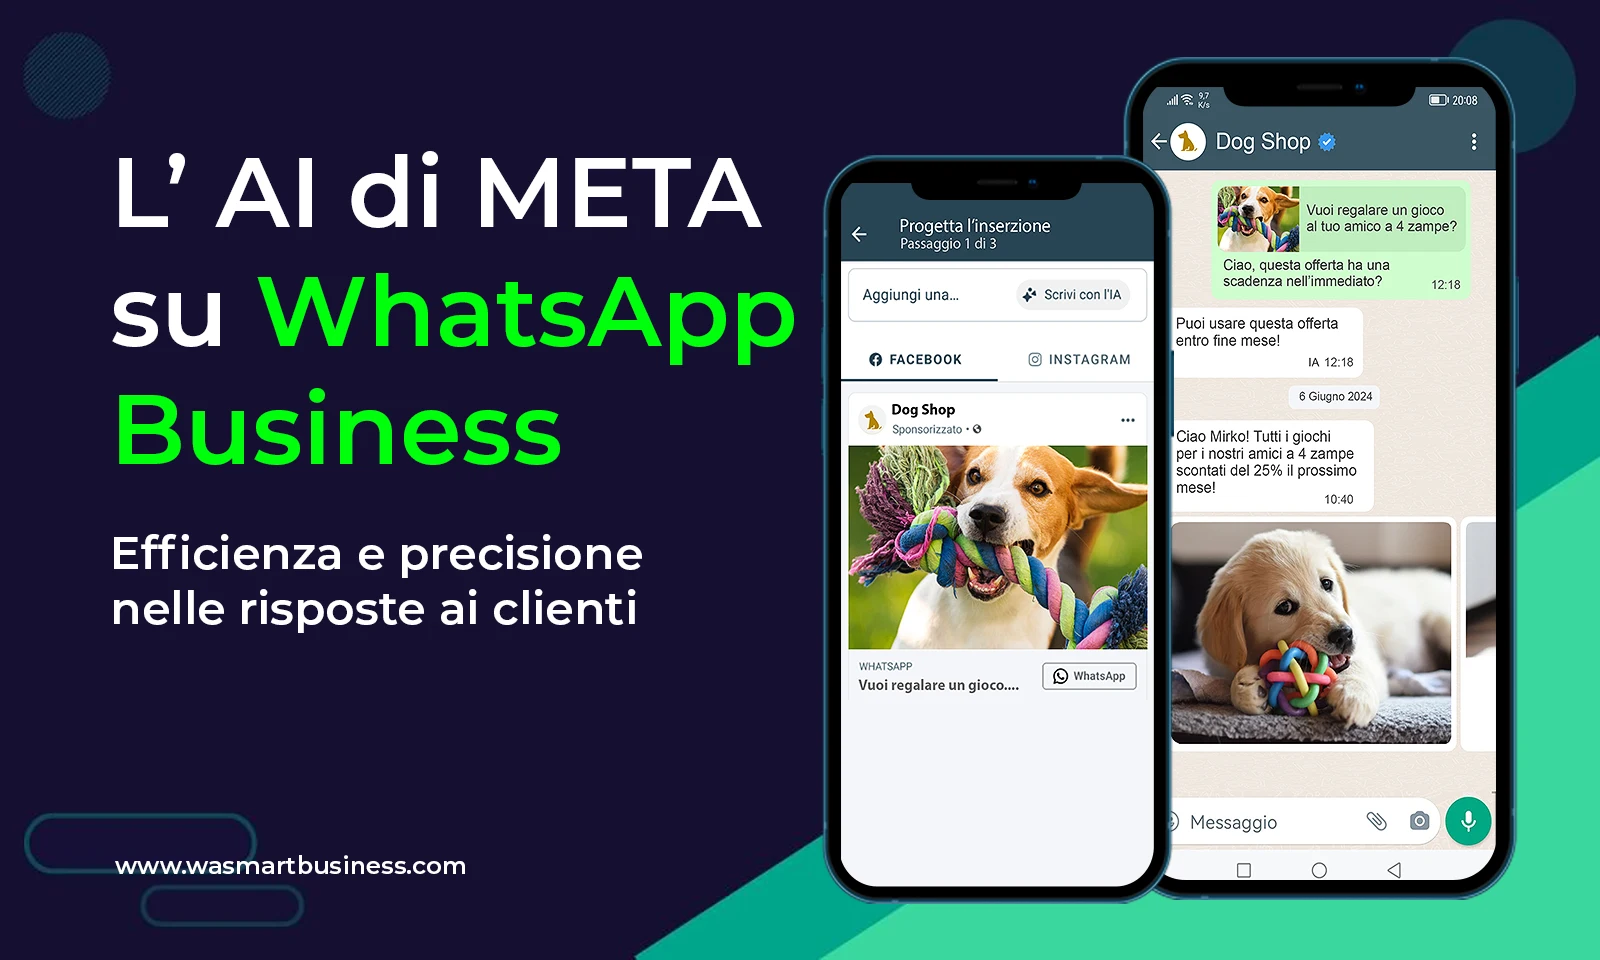 IA su WhatsApp - WA Smart Business